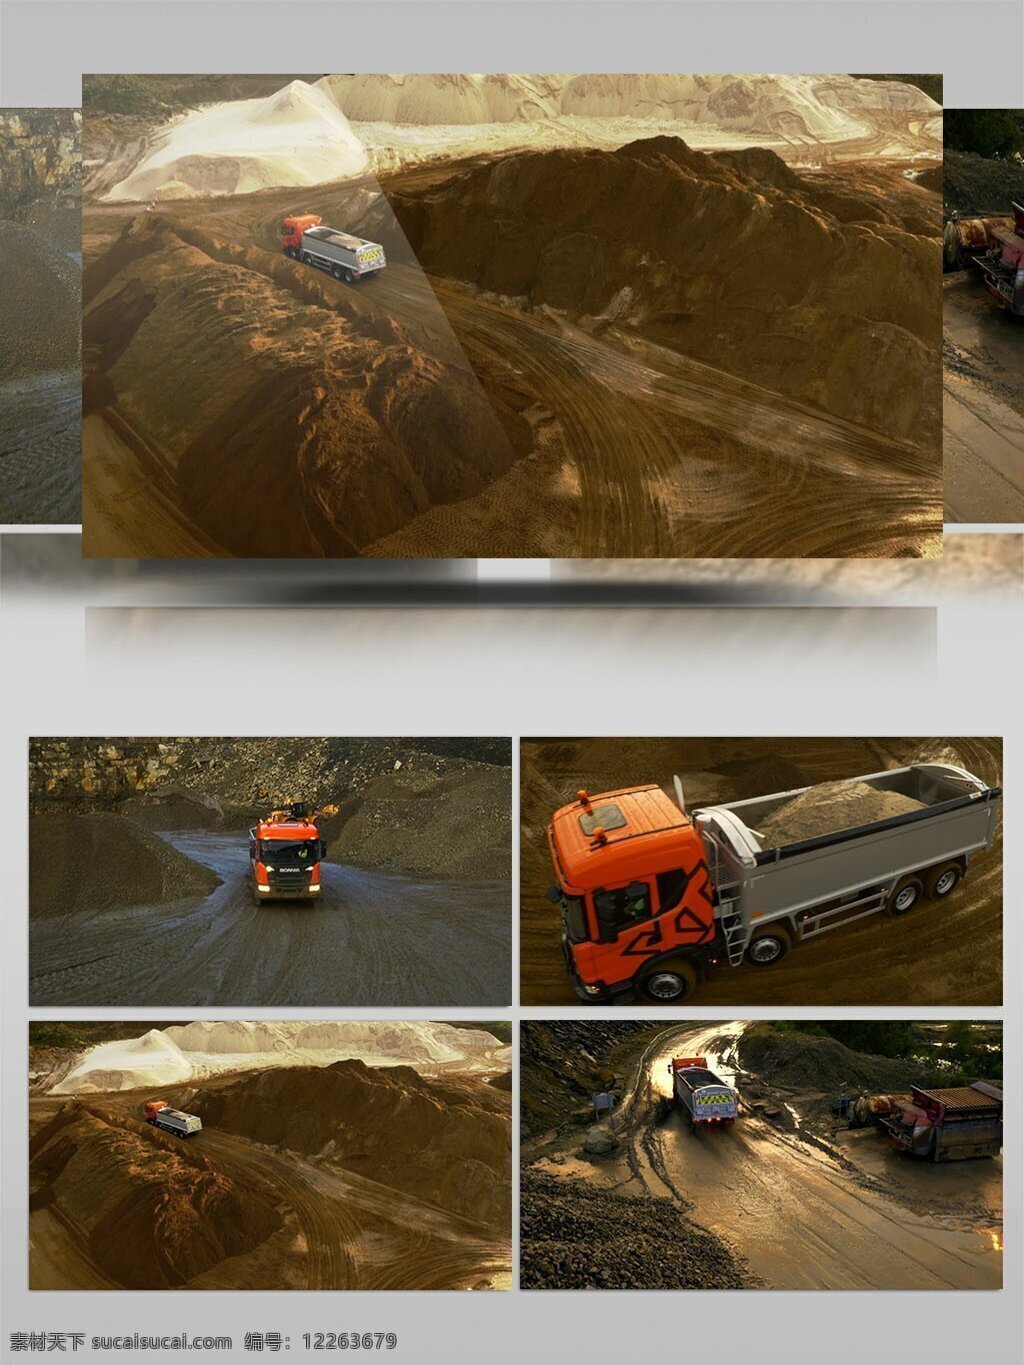 工地 大 货车 运输 砂石 视频 大货车 视频素材 运输砂石